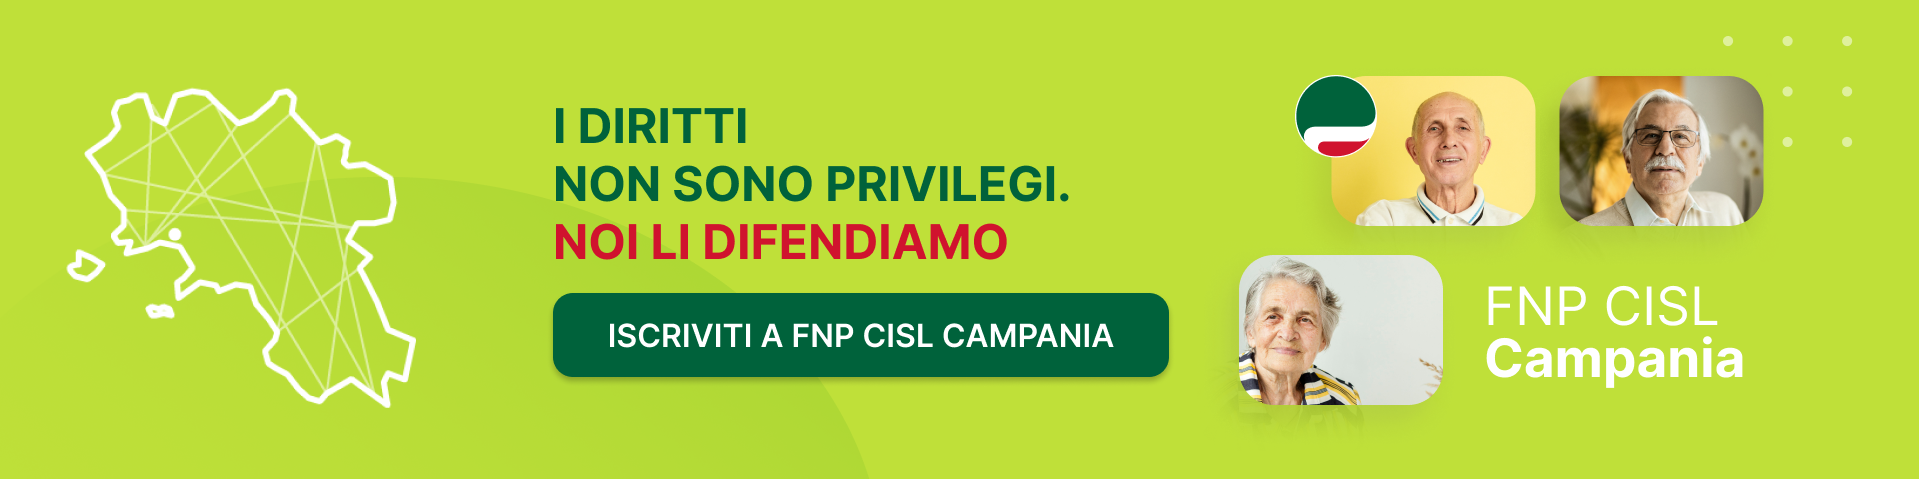 FNP CISL Campania - I diritti non sono privilegi. NOI LI DIFENDIAMO